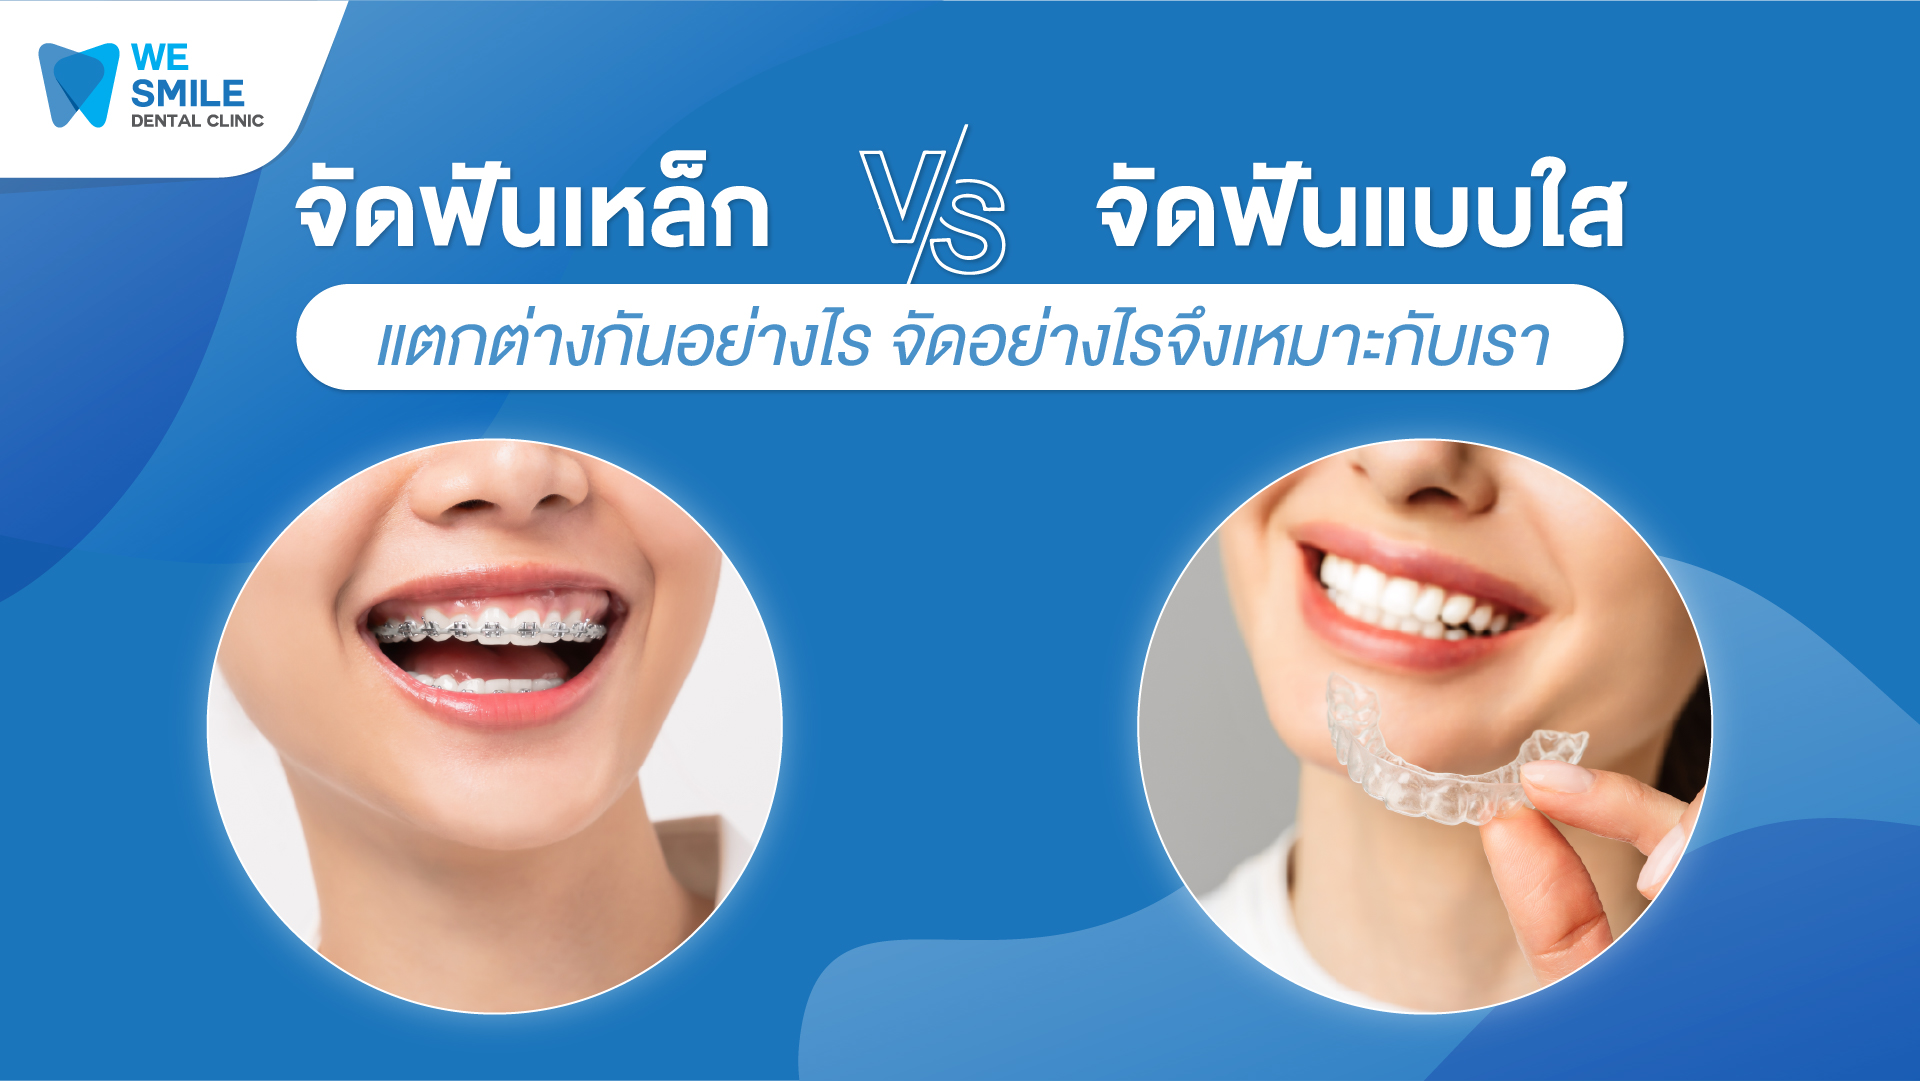 จัดฟันเหล็ก vs จัดฟันแบบไหน แตกต่างกันอย่างไร จัดอย่างไรจึงเหมาะกับเรา